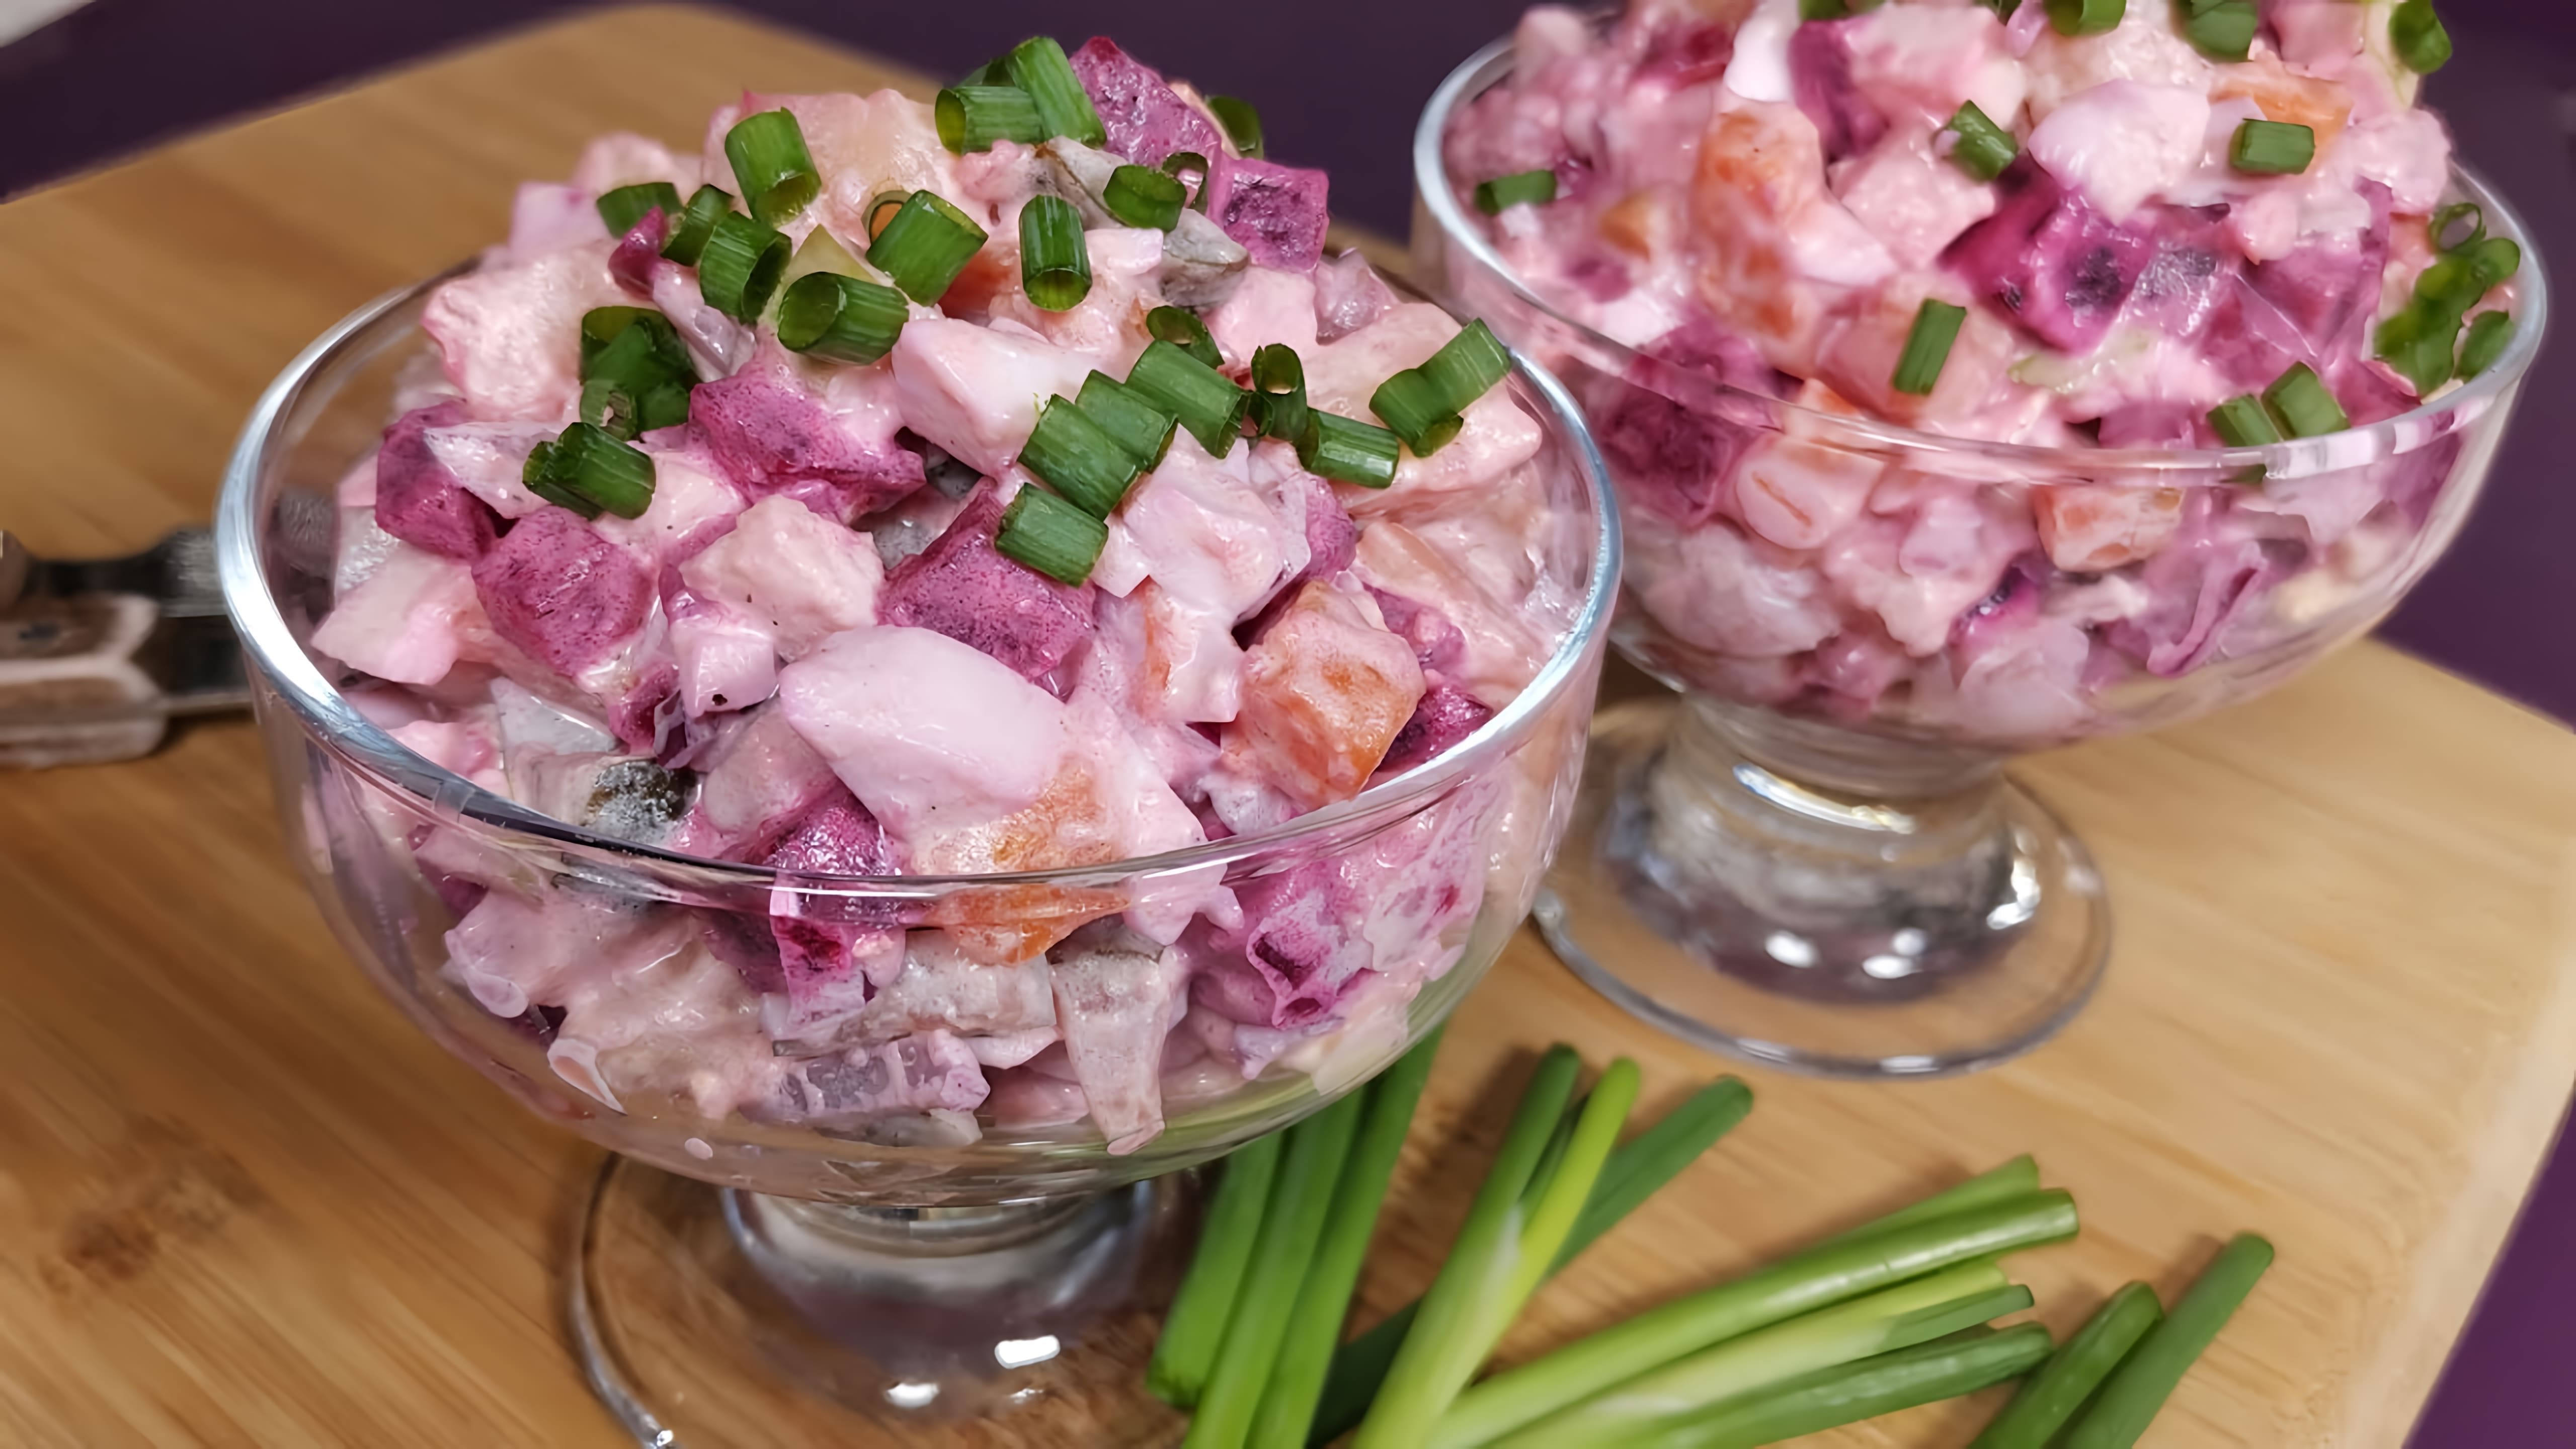 Финский салат с селёдкой и свёклой "Росоли" - это альтернатива винегрету и селедке под шубой одновременно